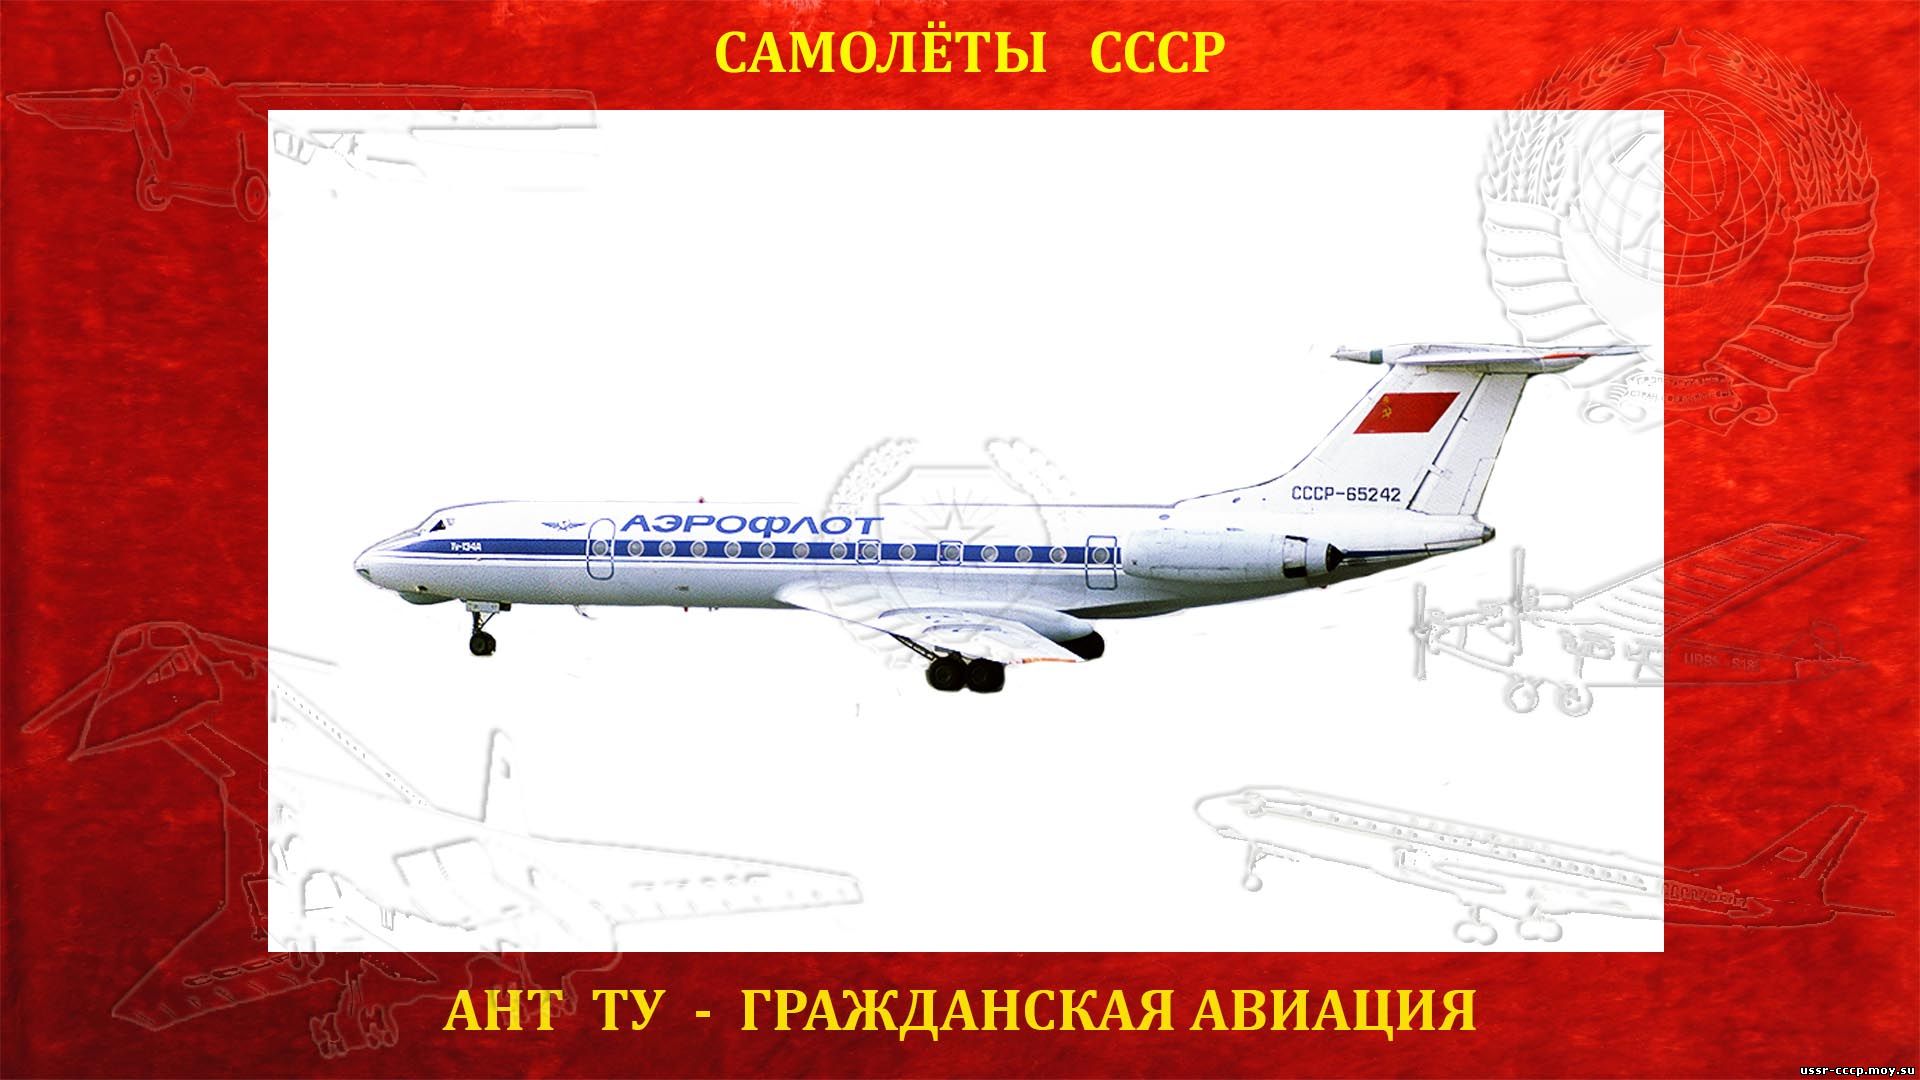 Ту-134 - Ближнемагистральный пассажирский самолет (повествование)